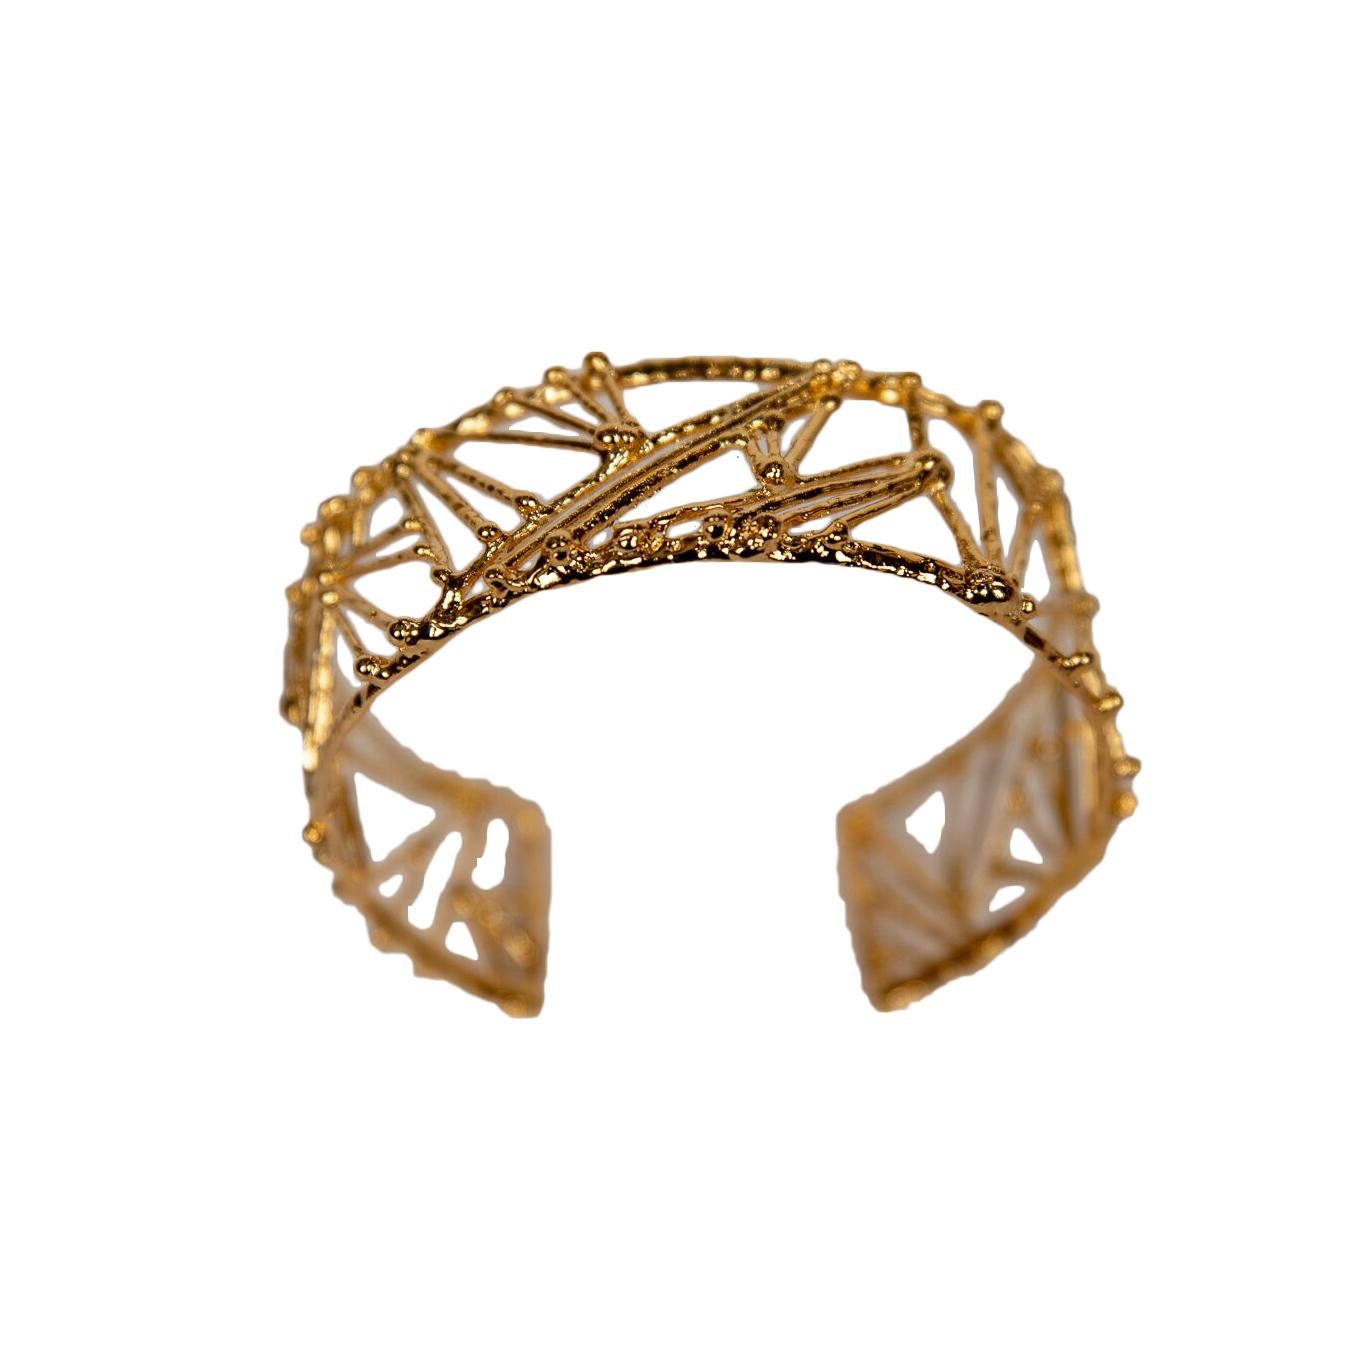 Wide Gold Plated Bronze "Twig" Bracelet by Franck Evennou, France, 2018 For Sale